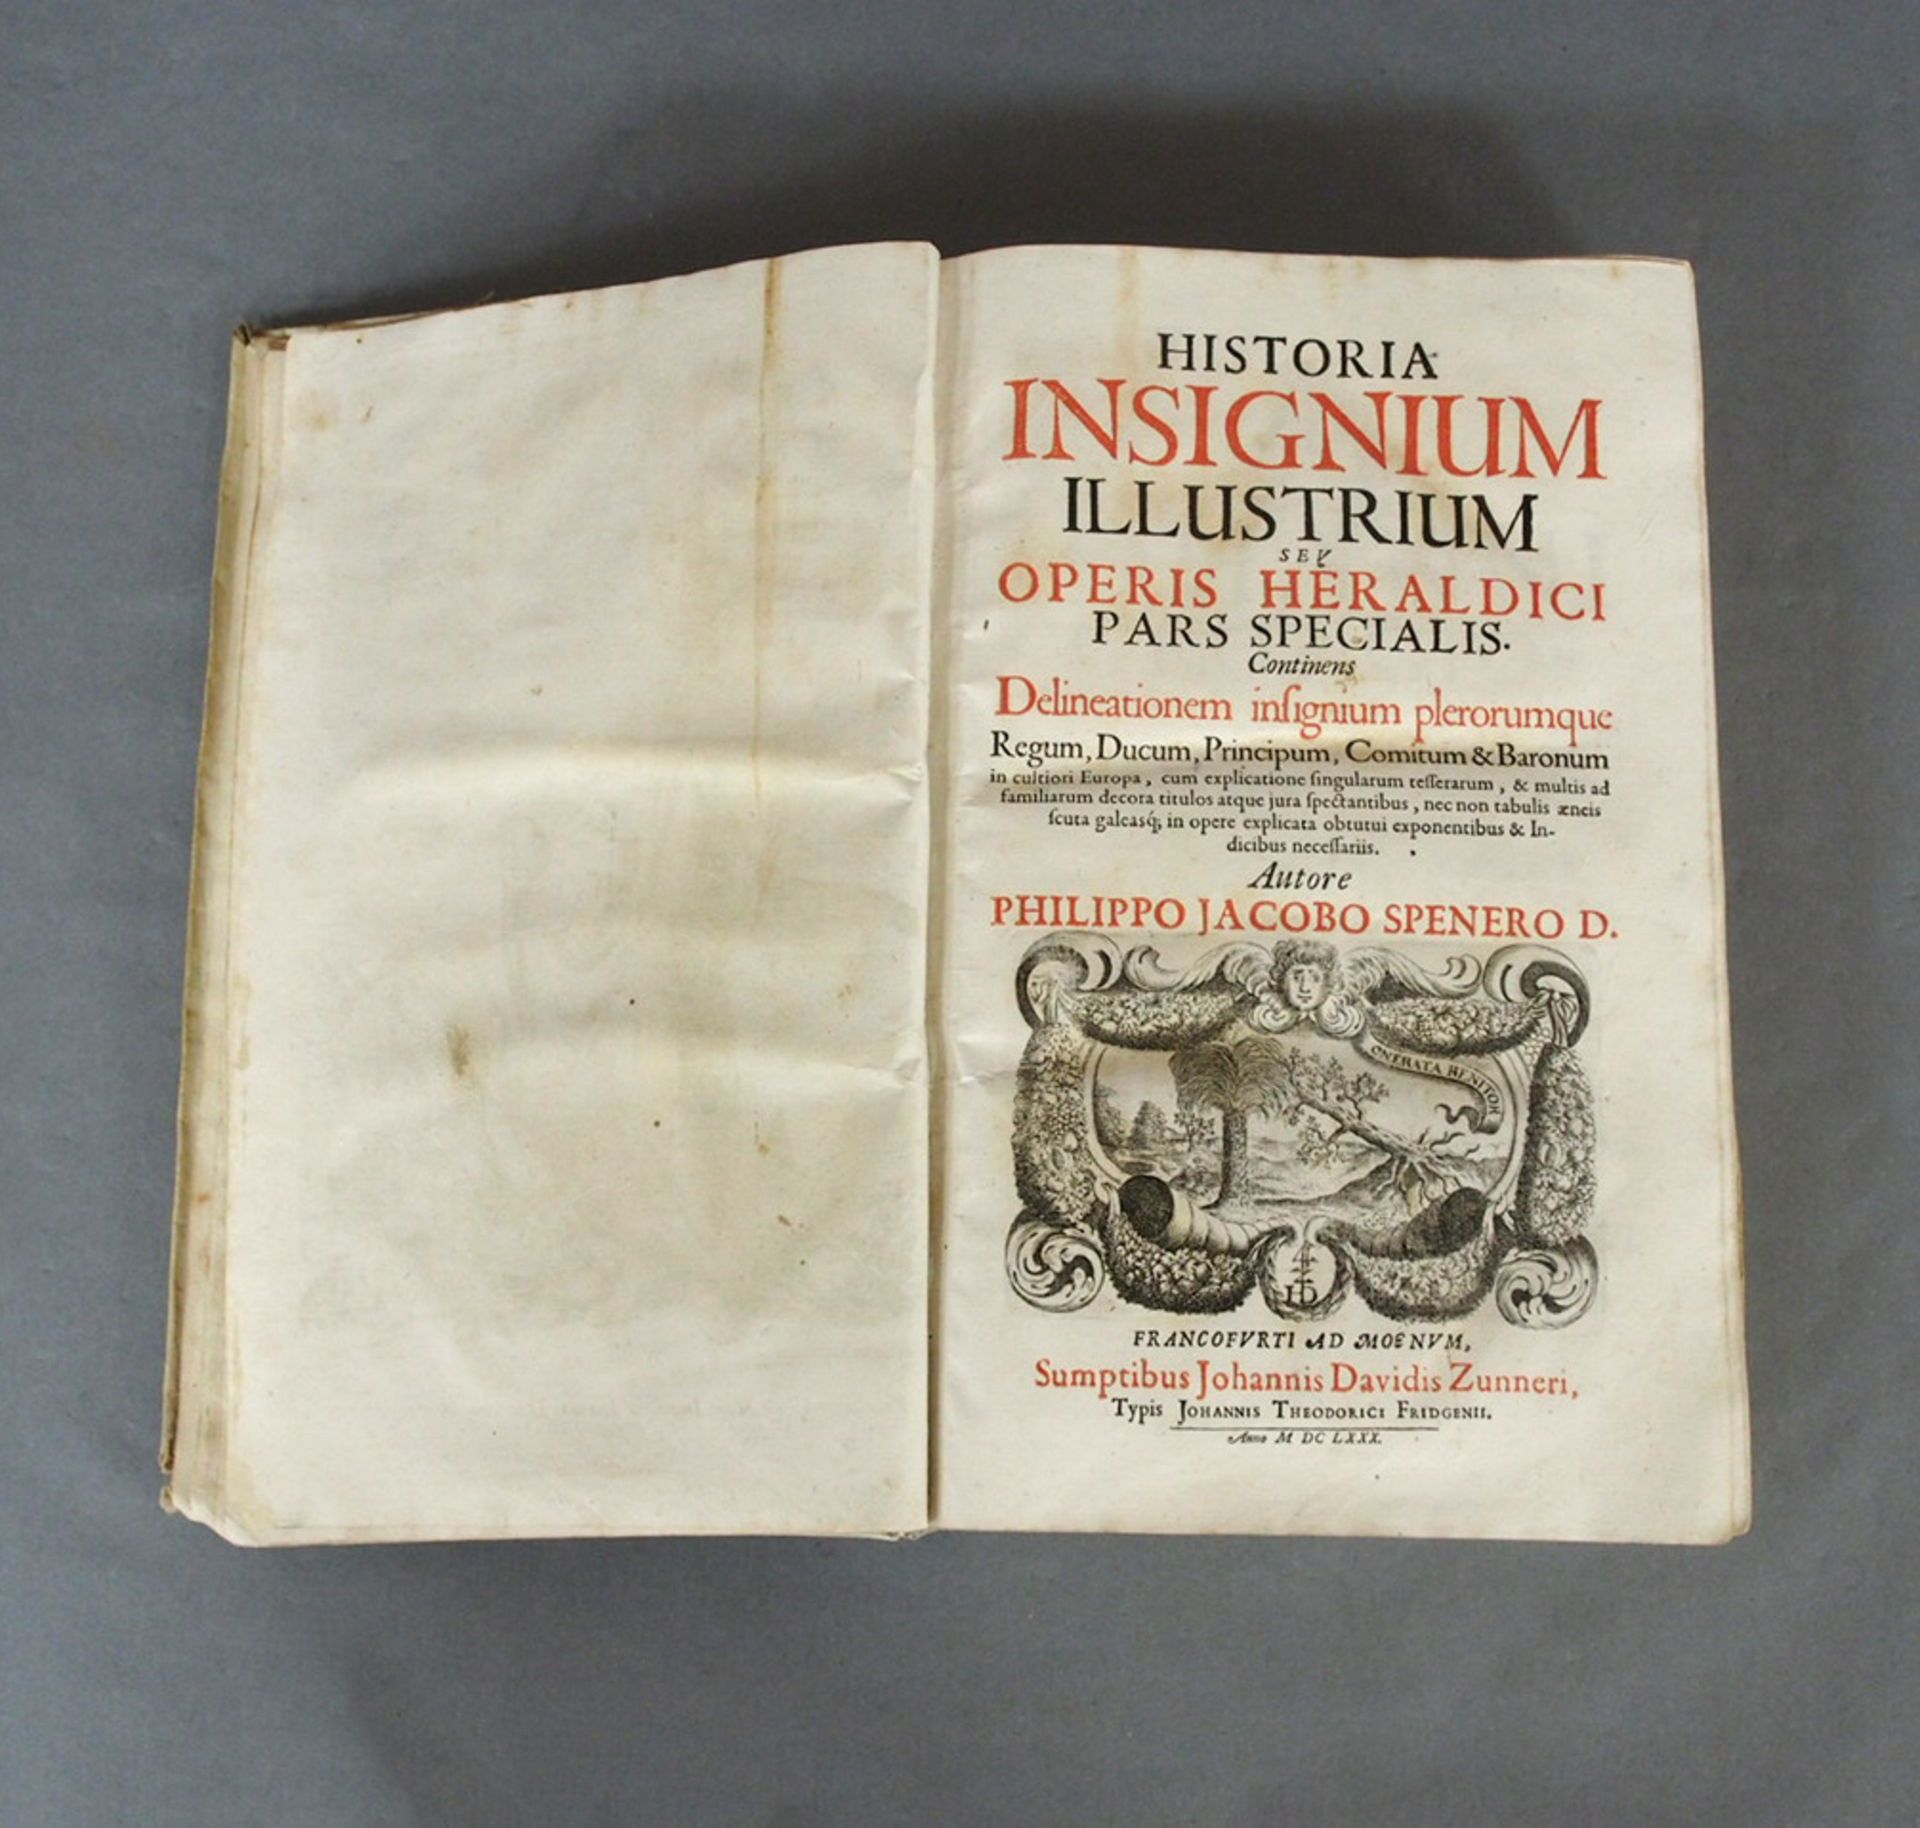 SPENER, Philipp Jacob: Historia insignium illustrium seu operis heraldici....